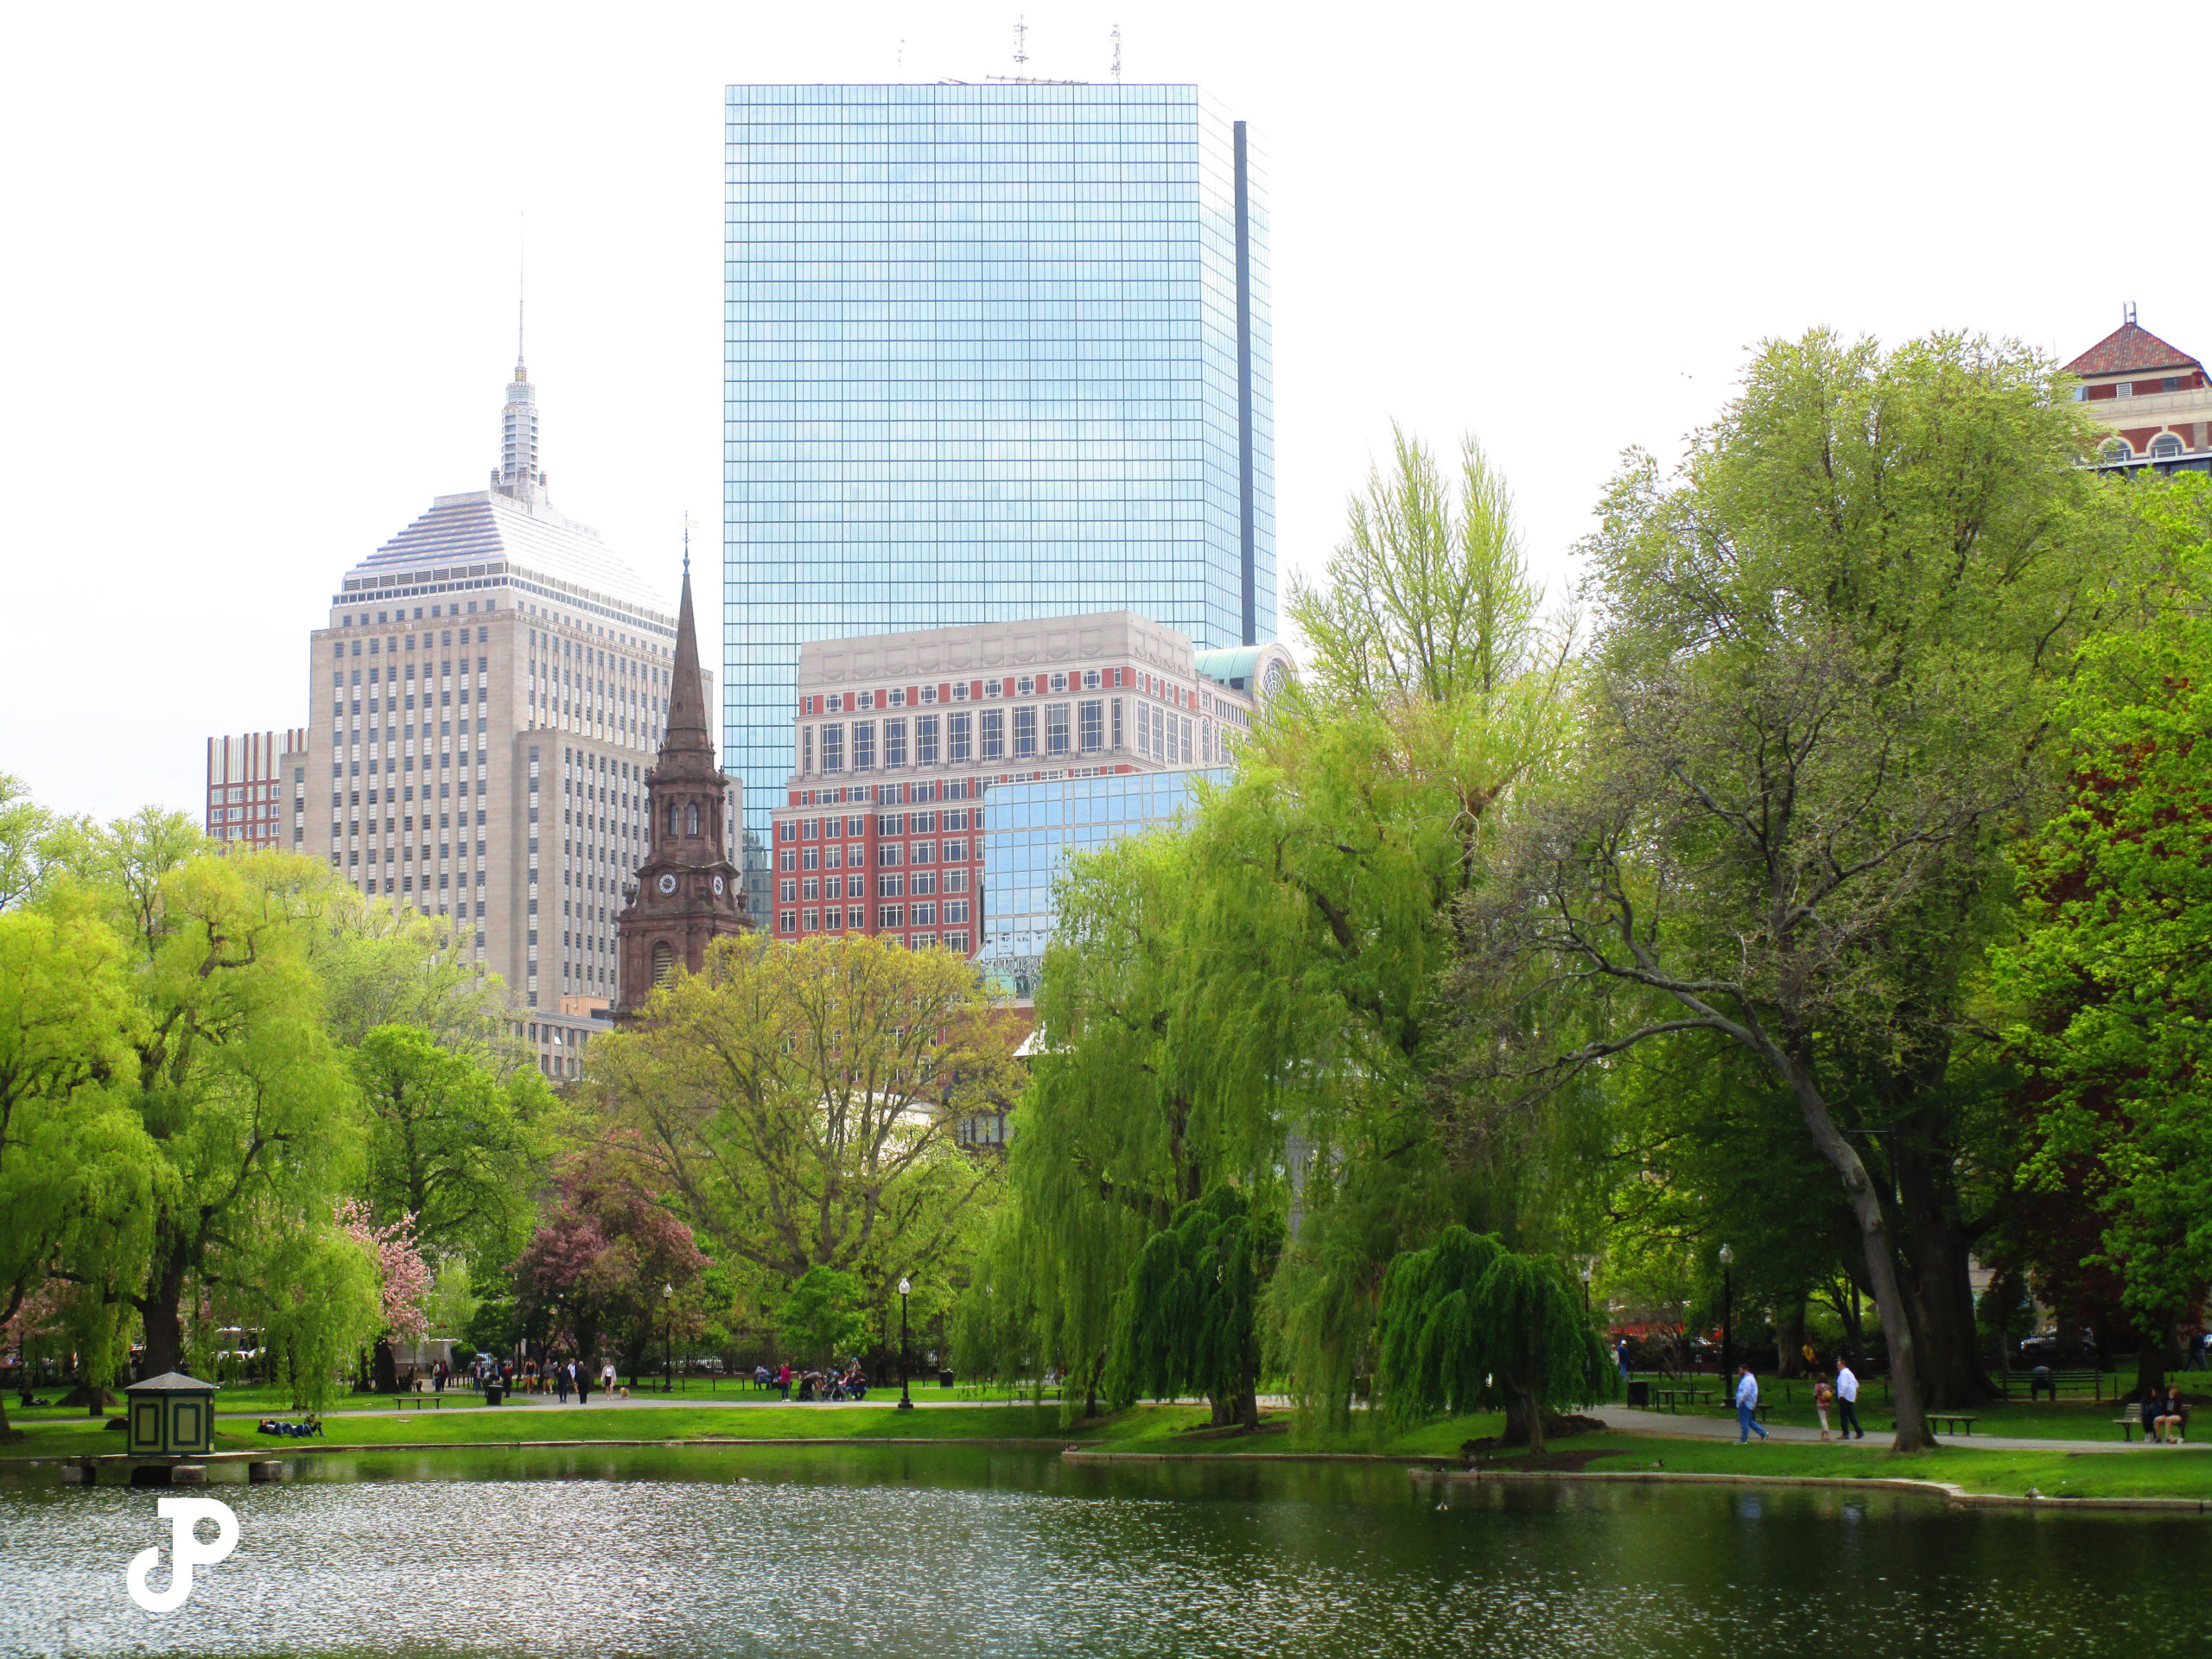 the Boston Public Garden